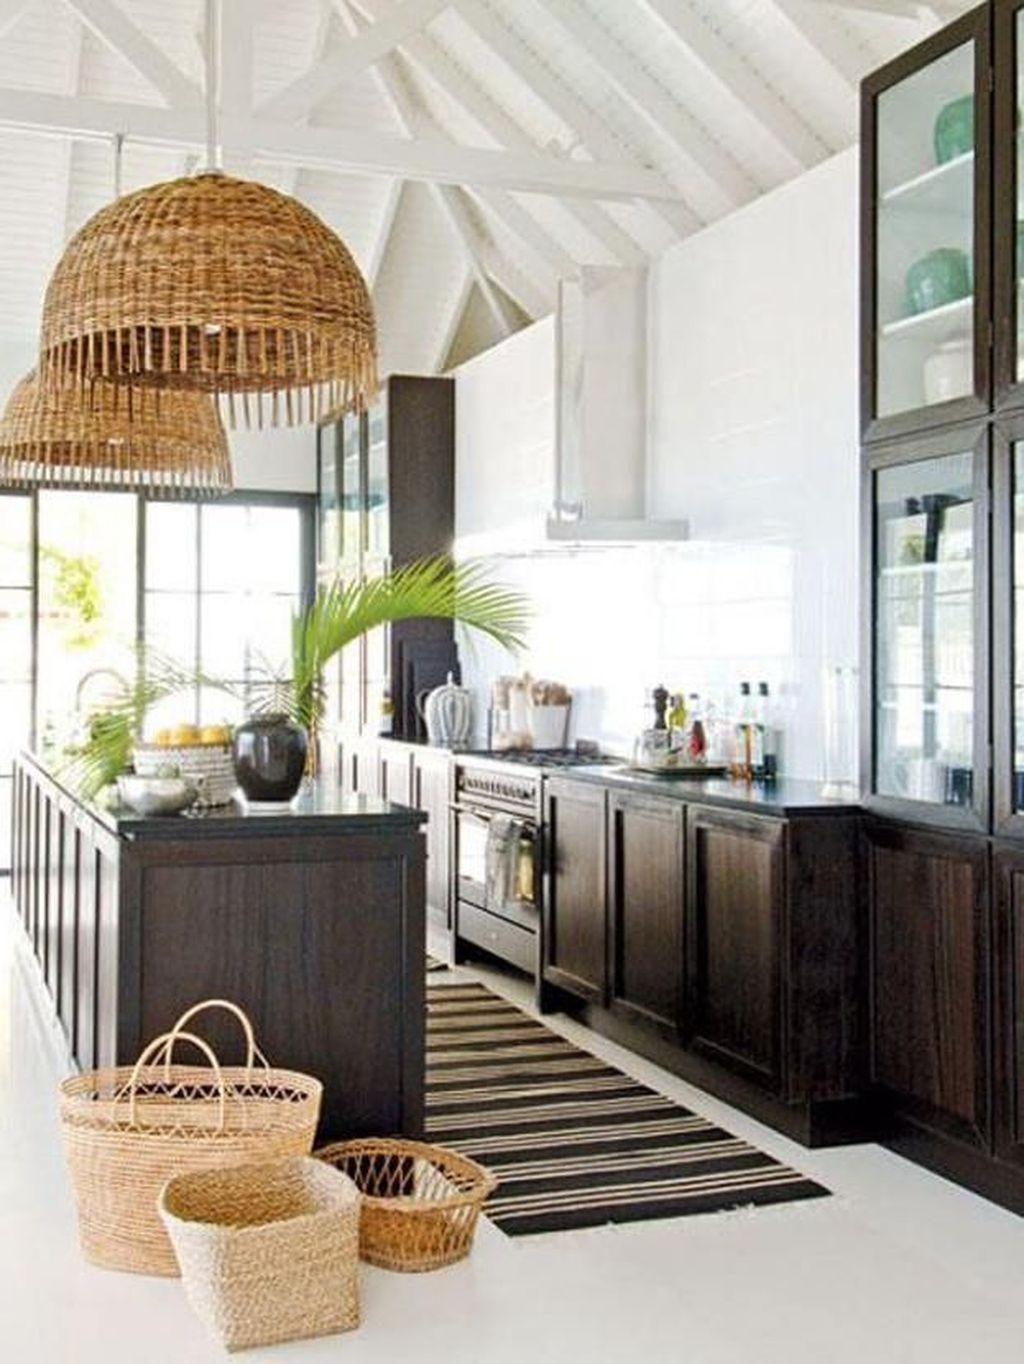 Trang trí nhà bếp theo phong cách nhiệt đới, truyền cảm hứng cho một mùa hè sôi động - Ảnh 3.